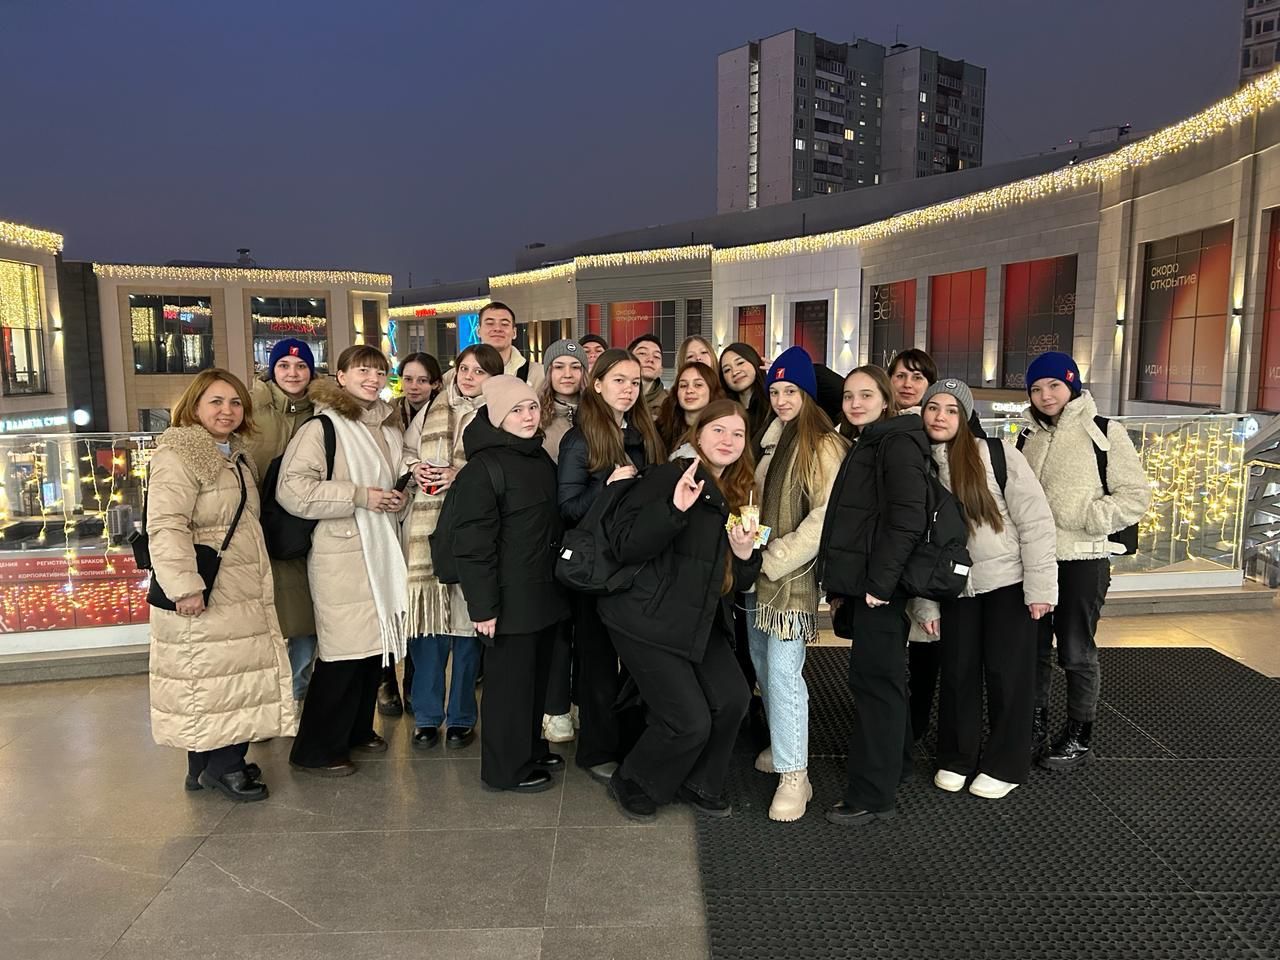 Нурлатские школьники посетили Международную выставку-форум «Россия»